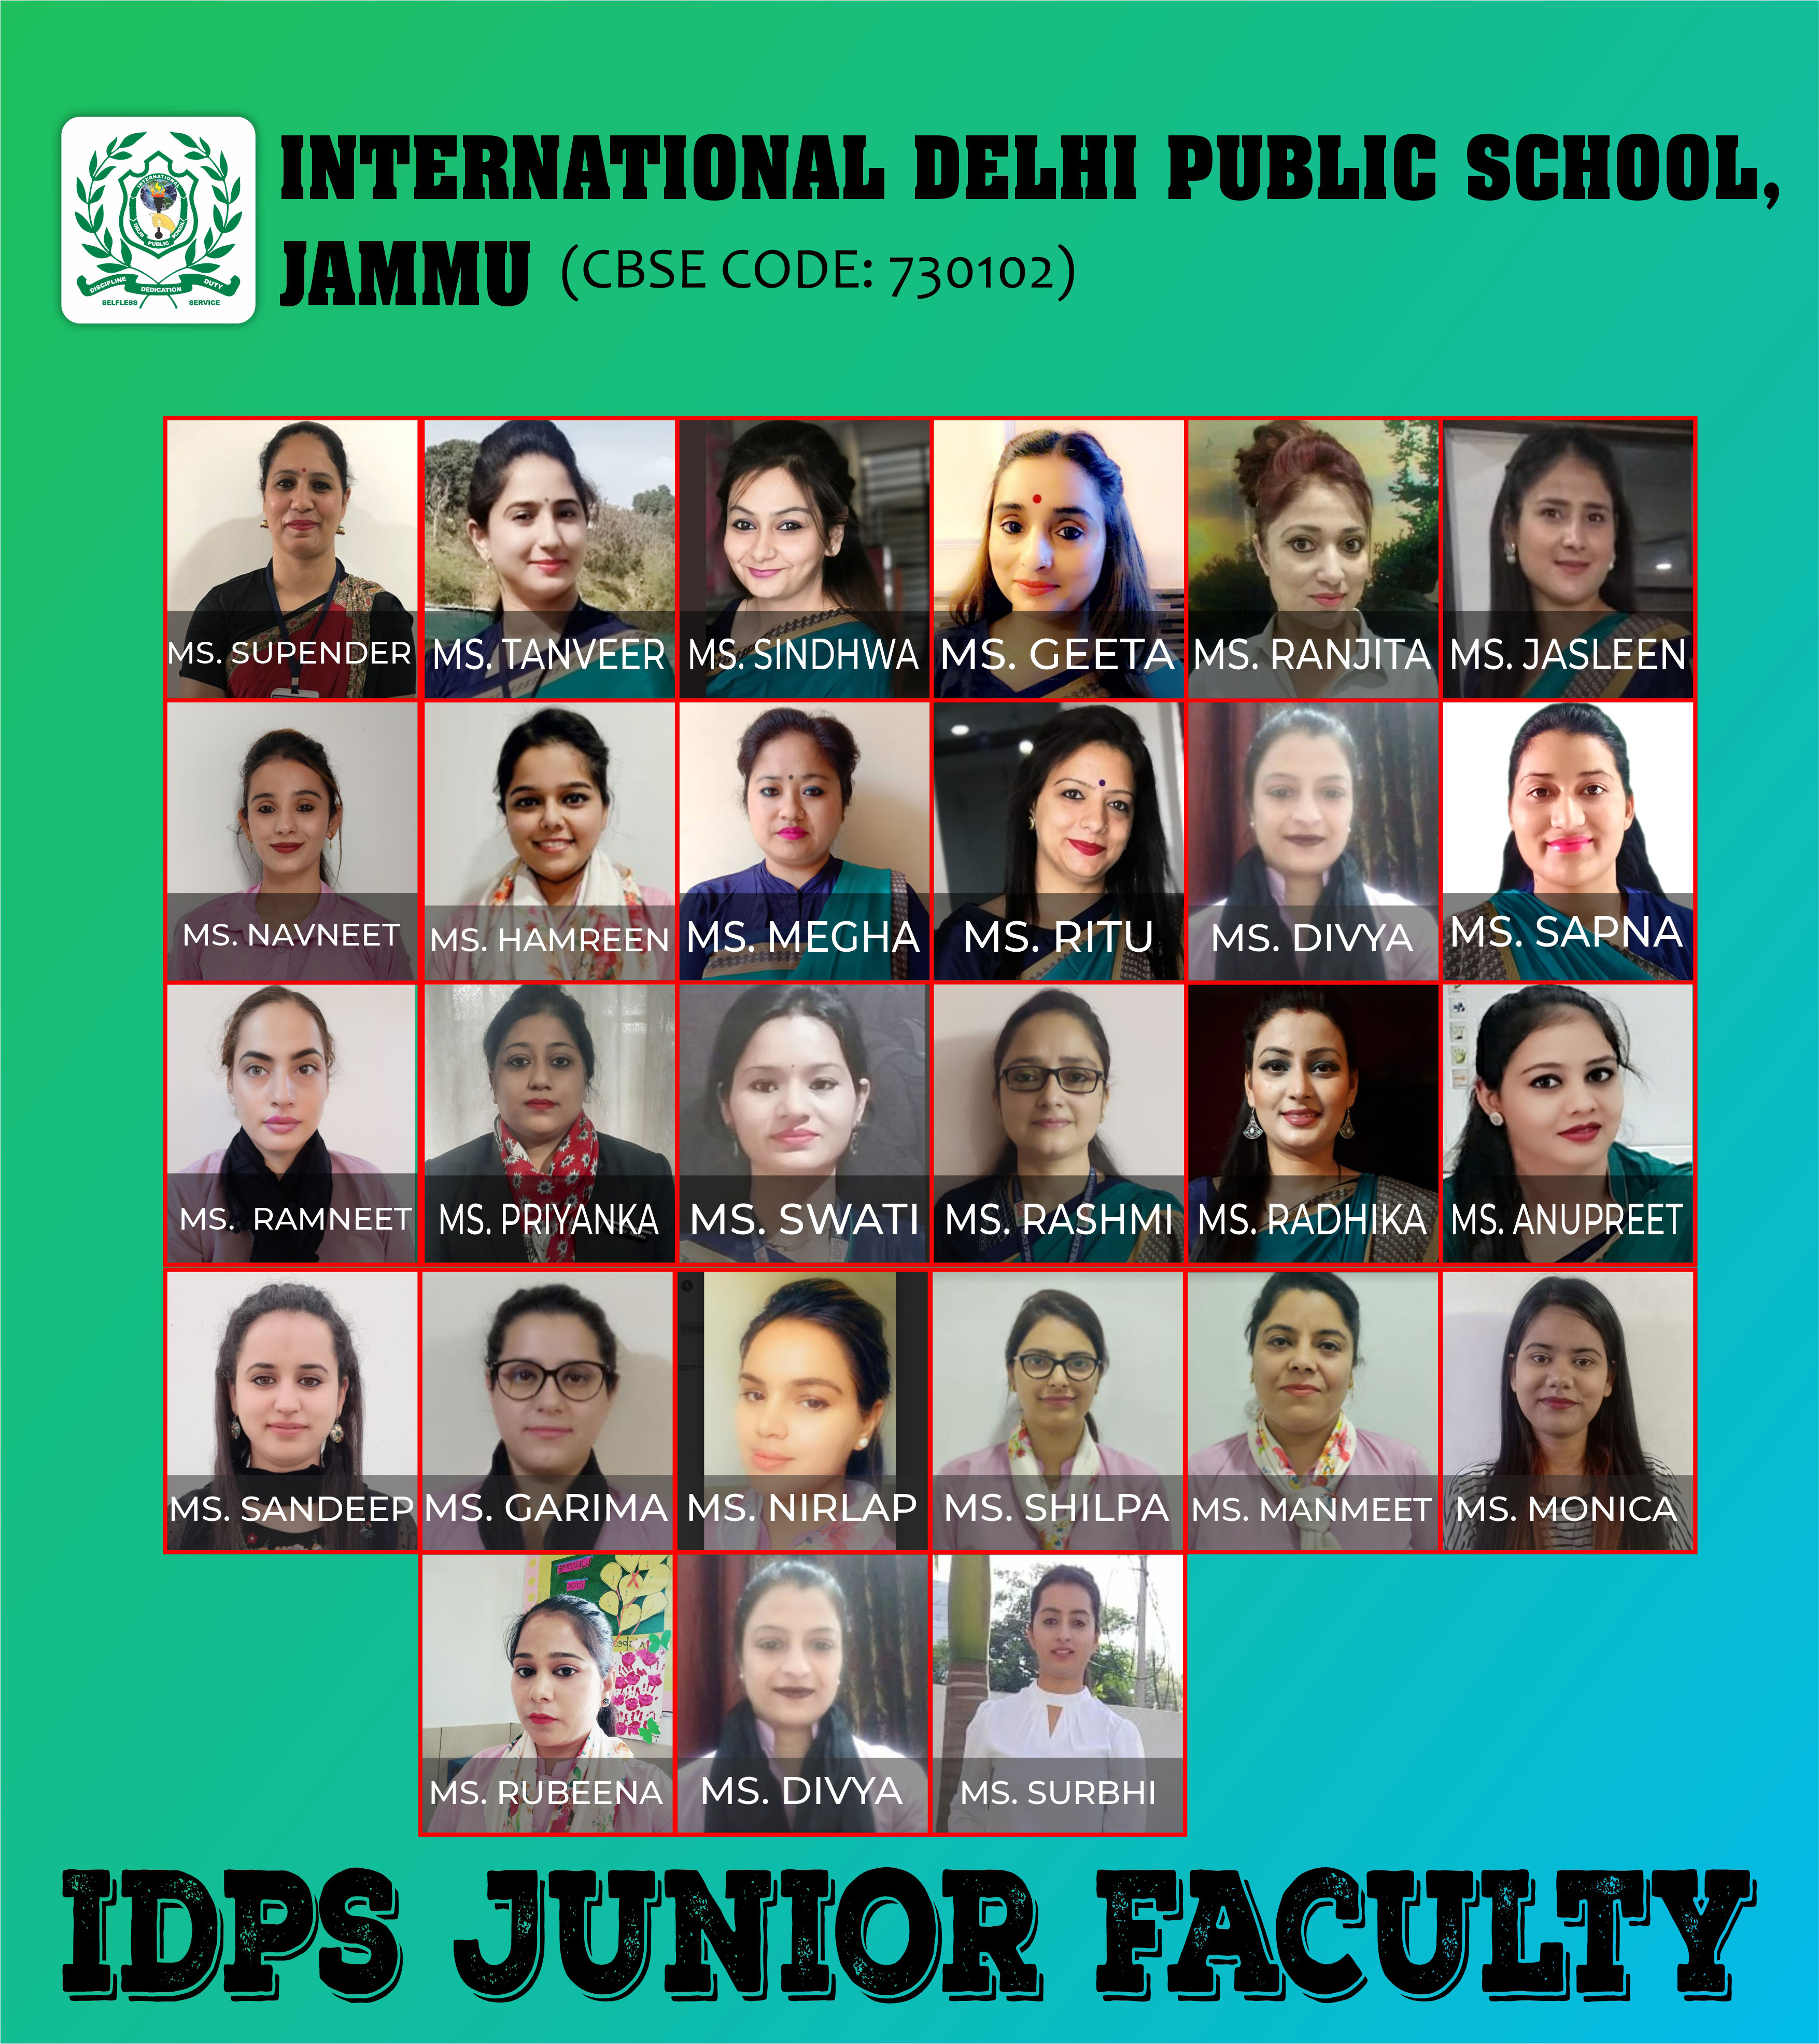 IDPS Junior Faculty